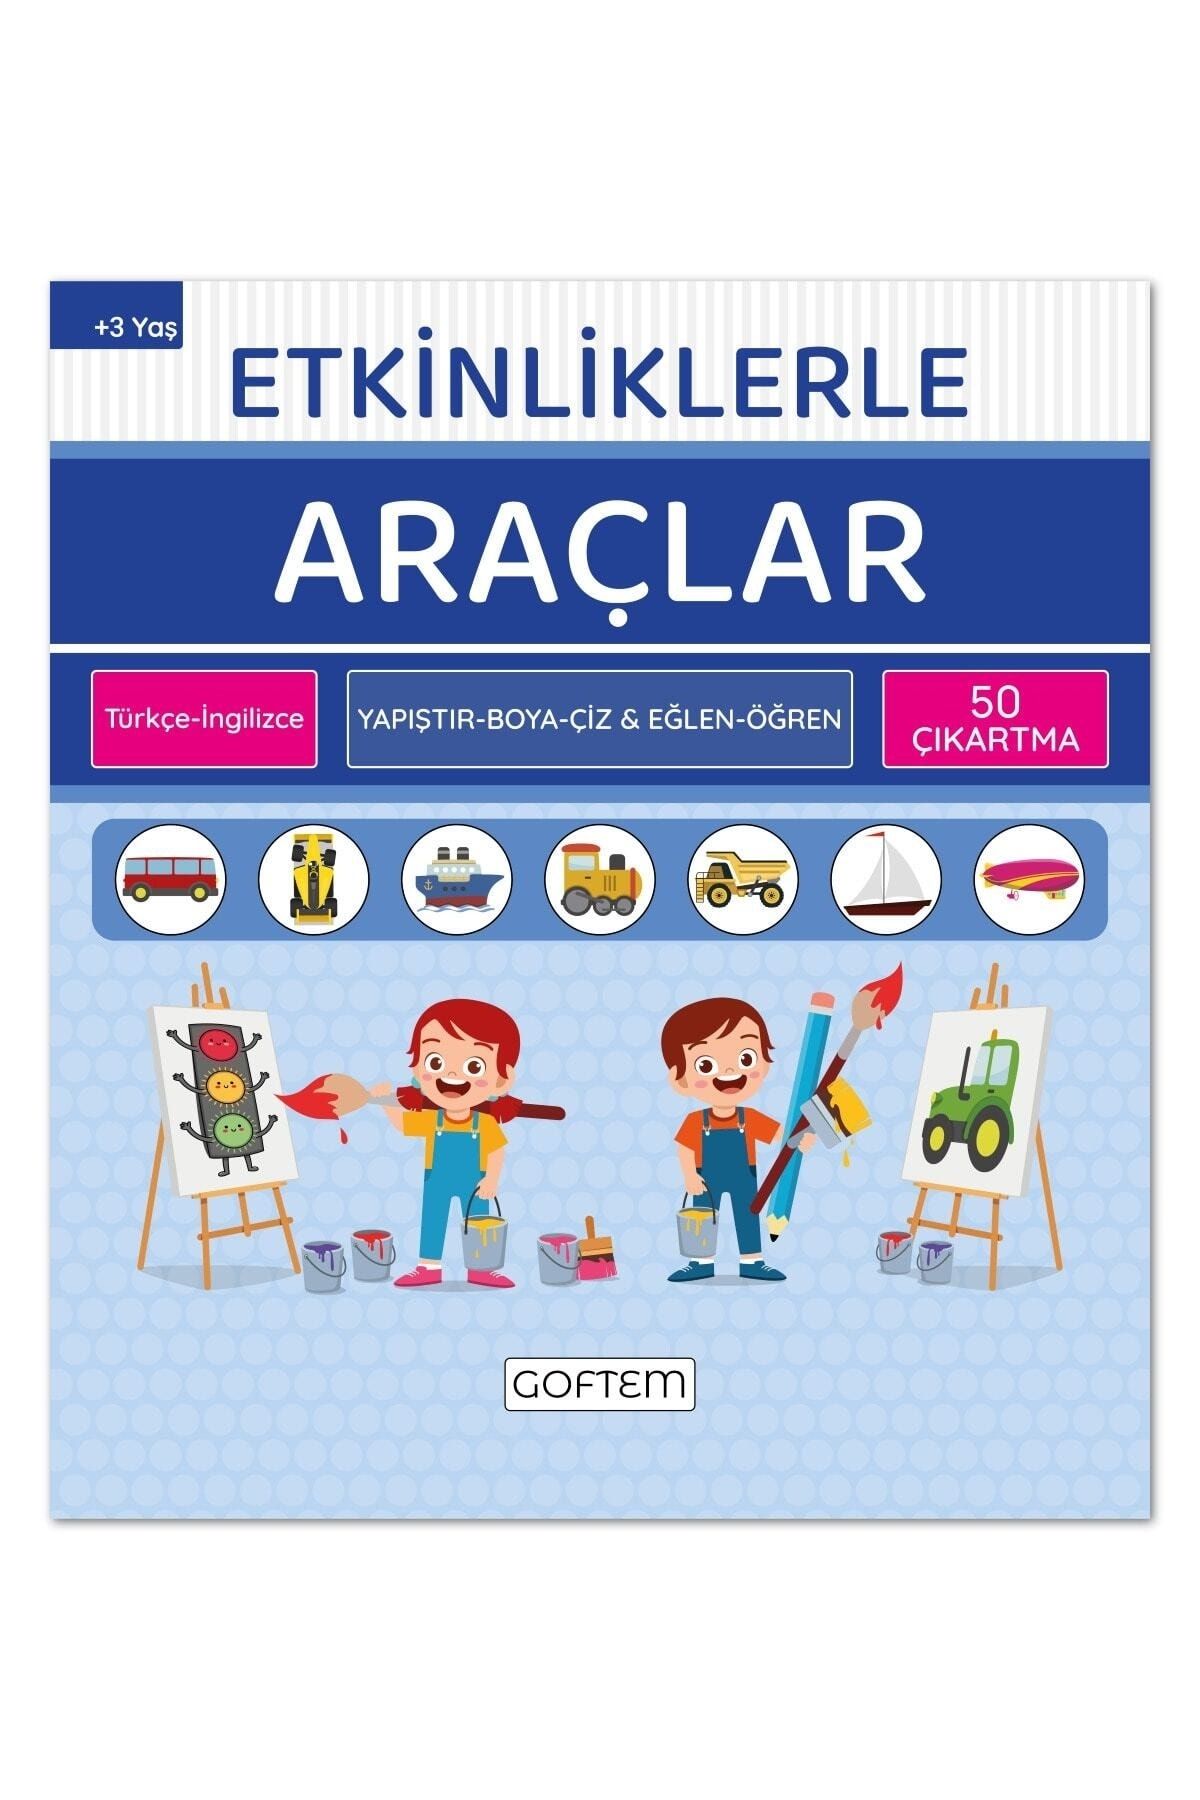 Etkinliklerle Araçlar - Türkçe Ingilizce - 50 Çıkartma - 24 Sayfa Eğitici Aktivite Kitabı